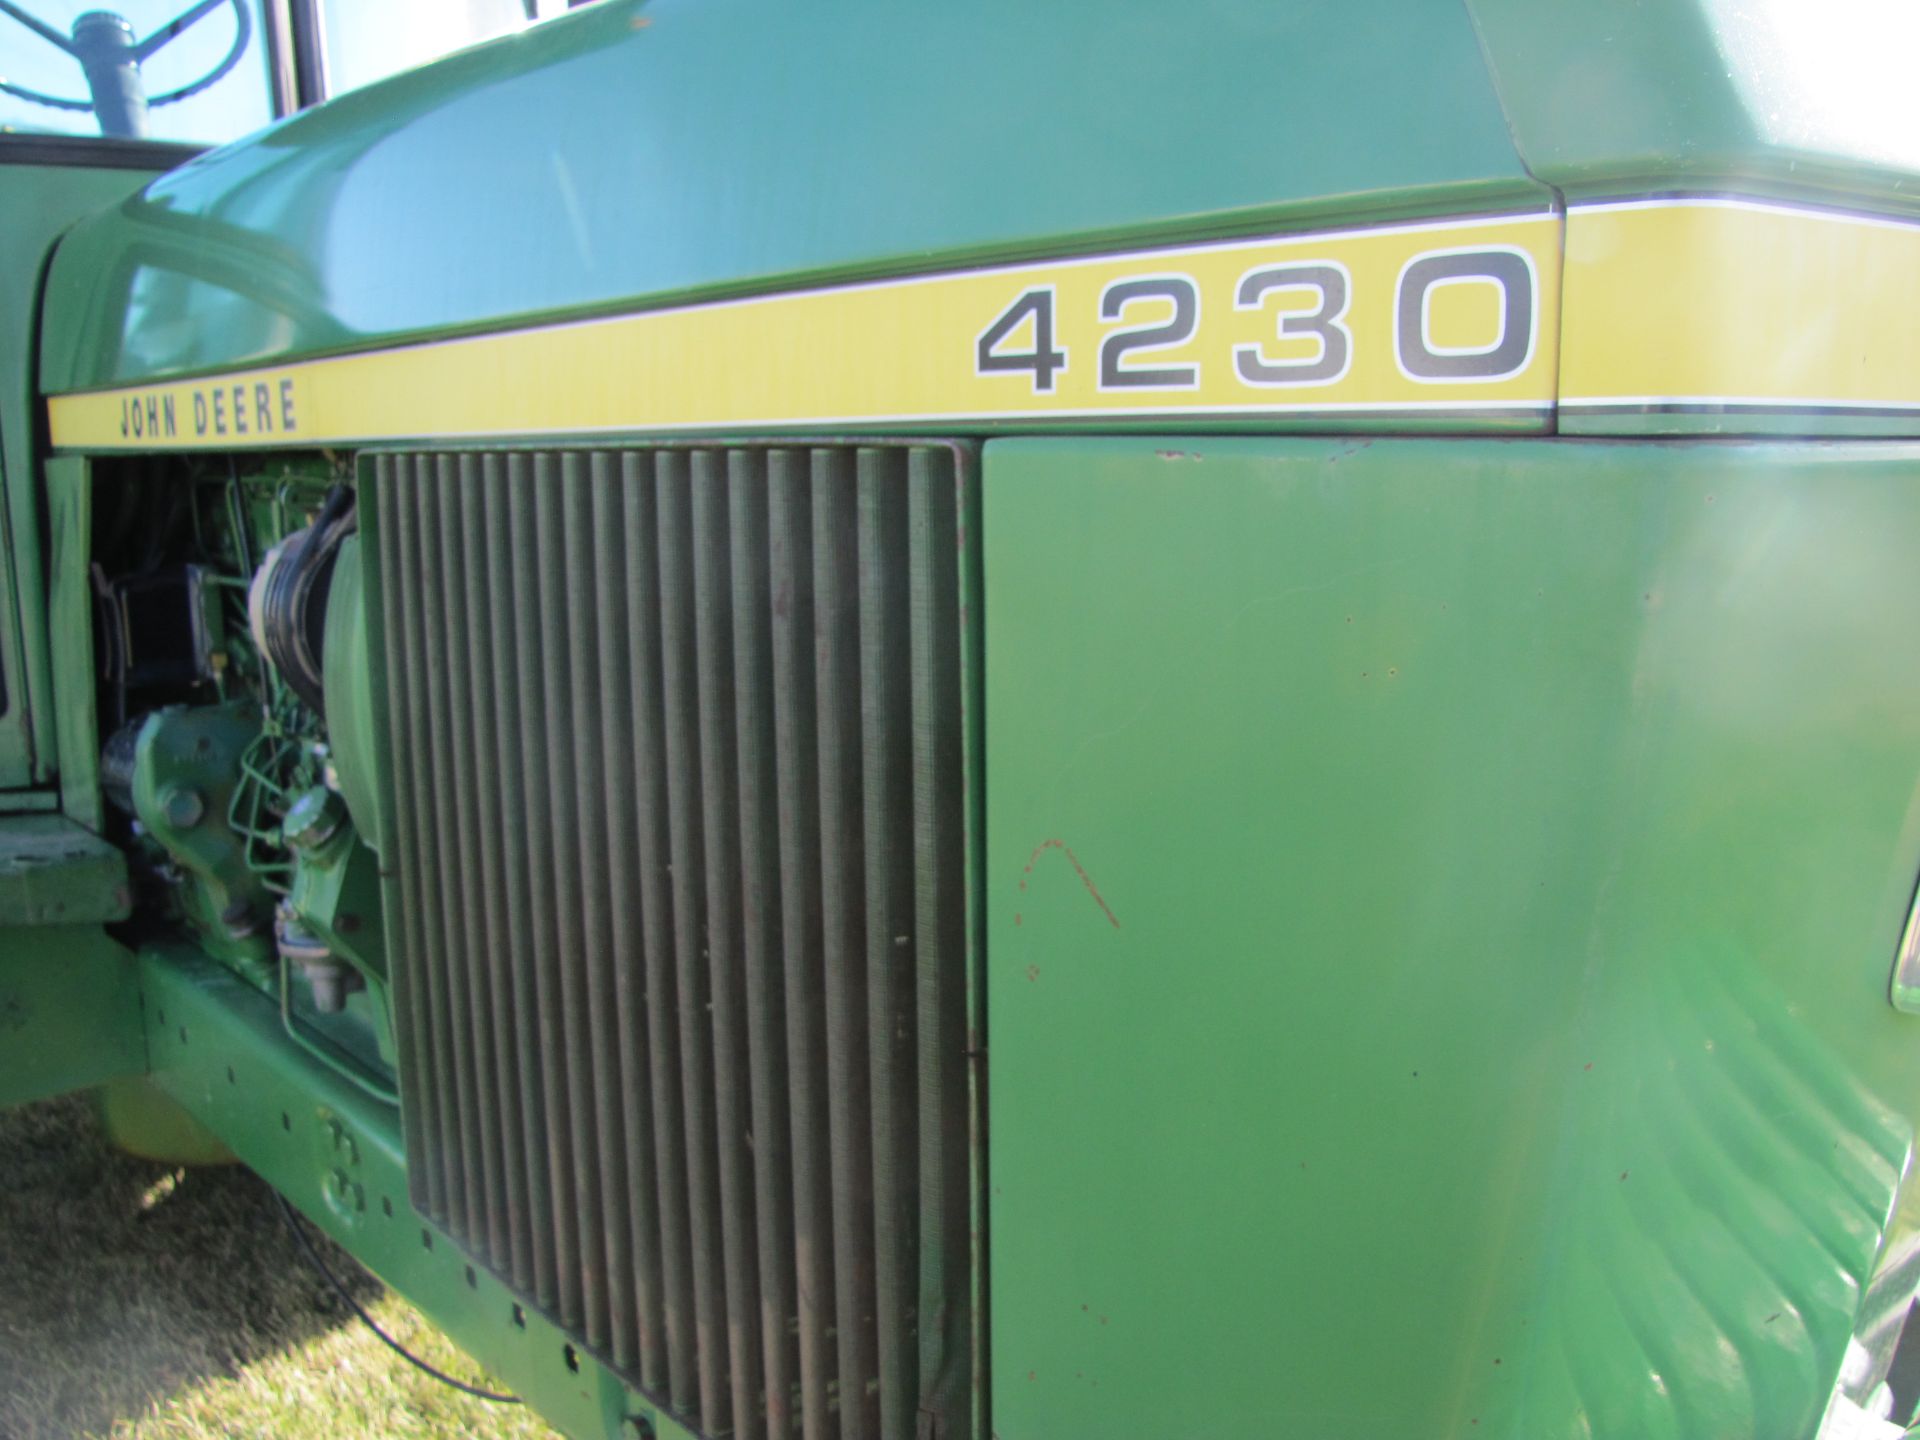 John Deere 4230 tractor - Image 37 of 49